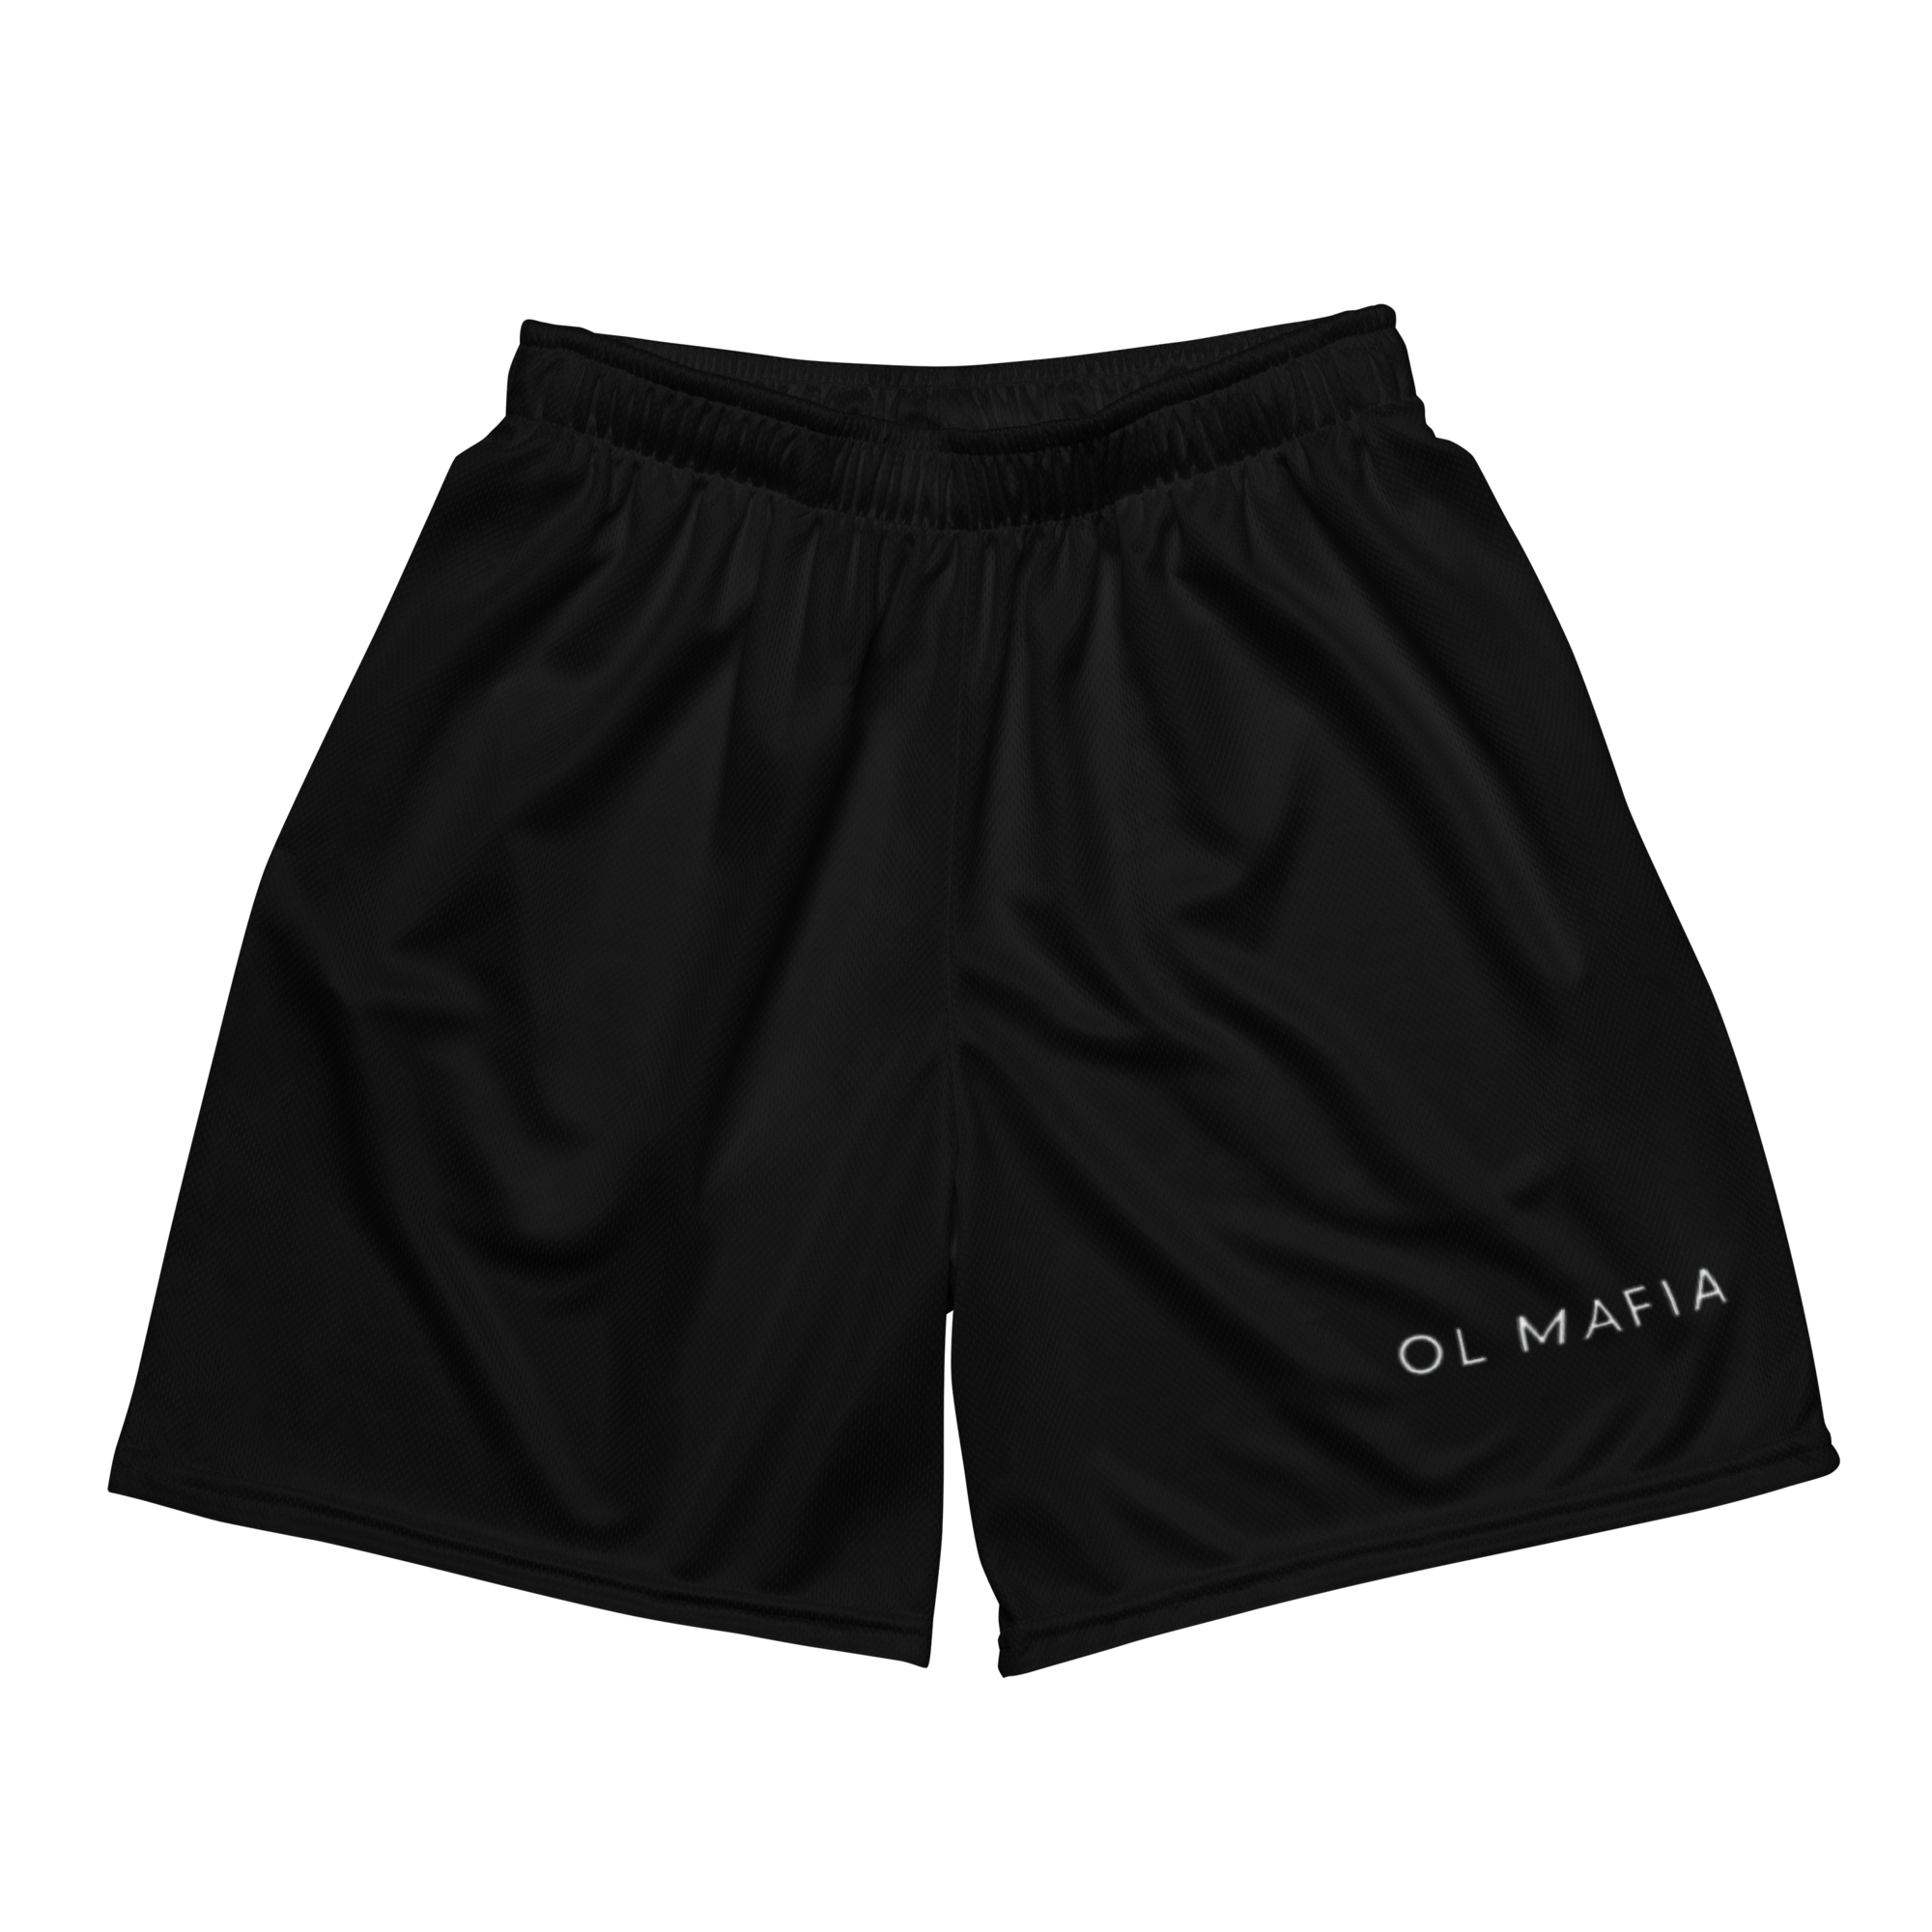 OL Mafia Mesh Shorts